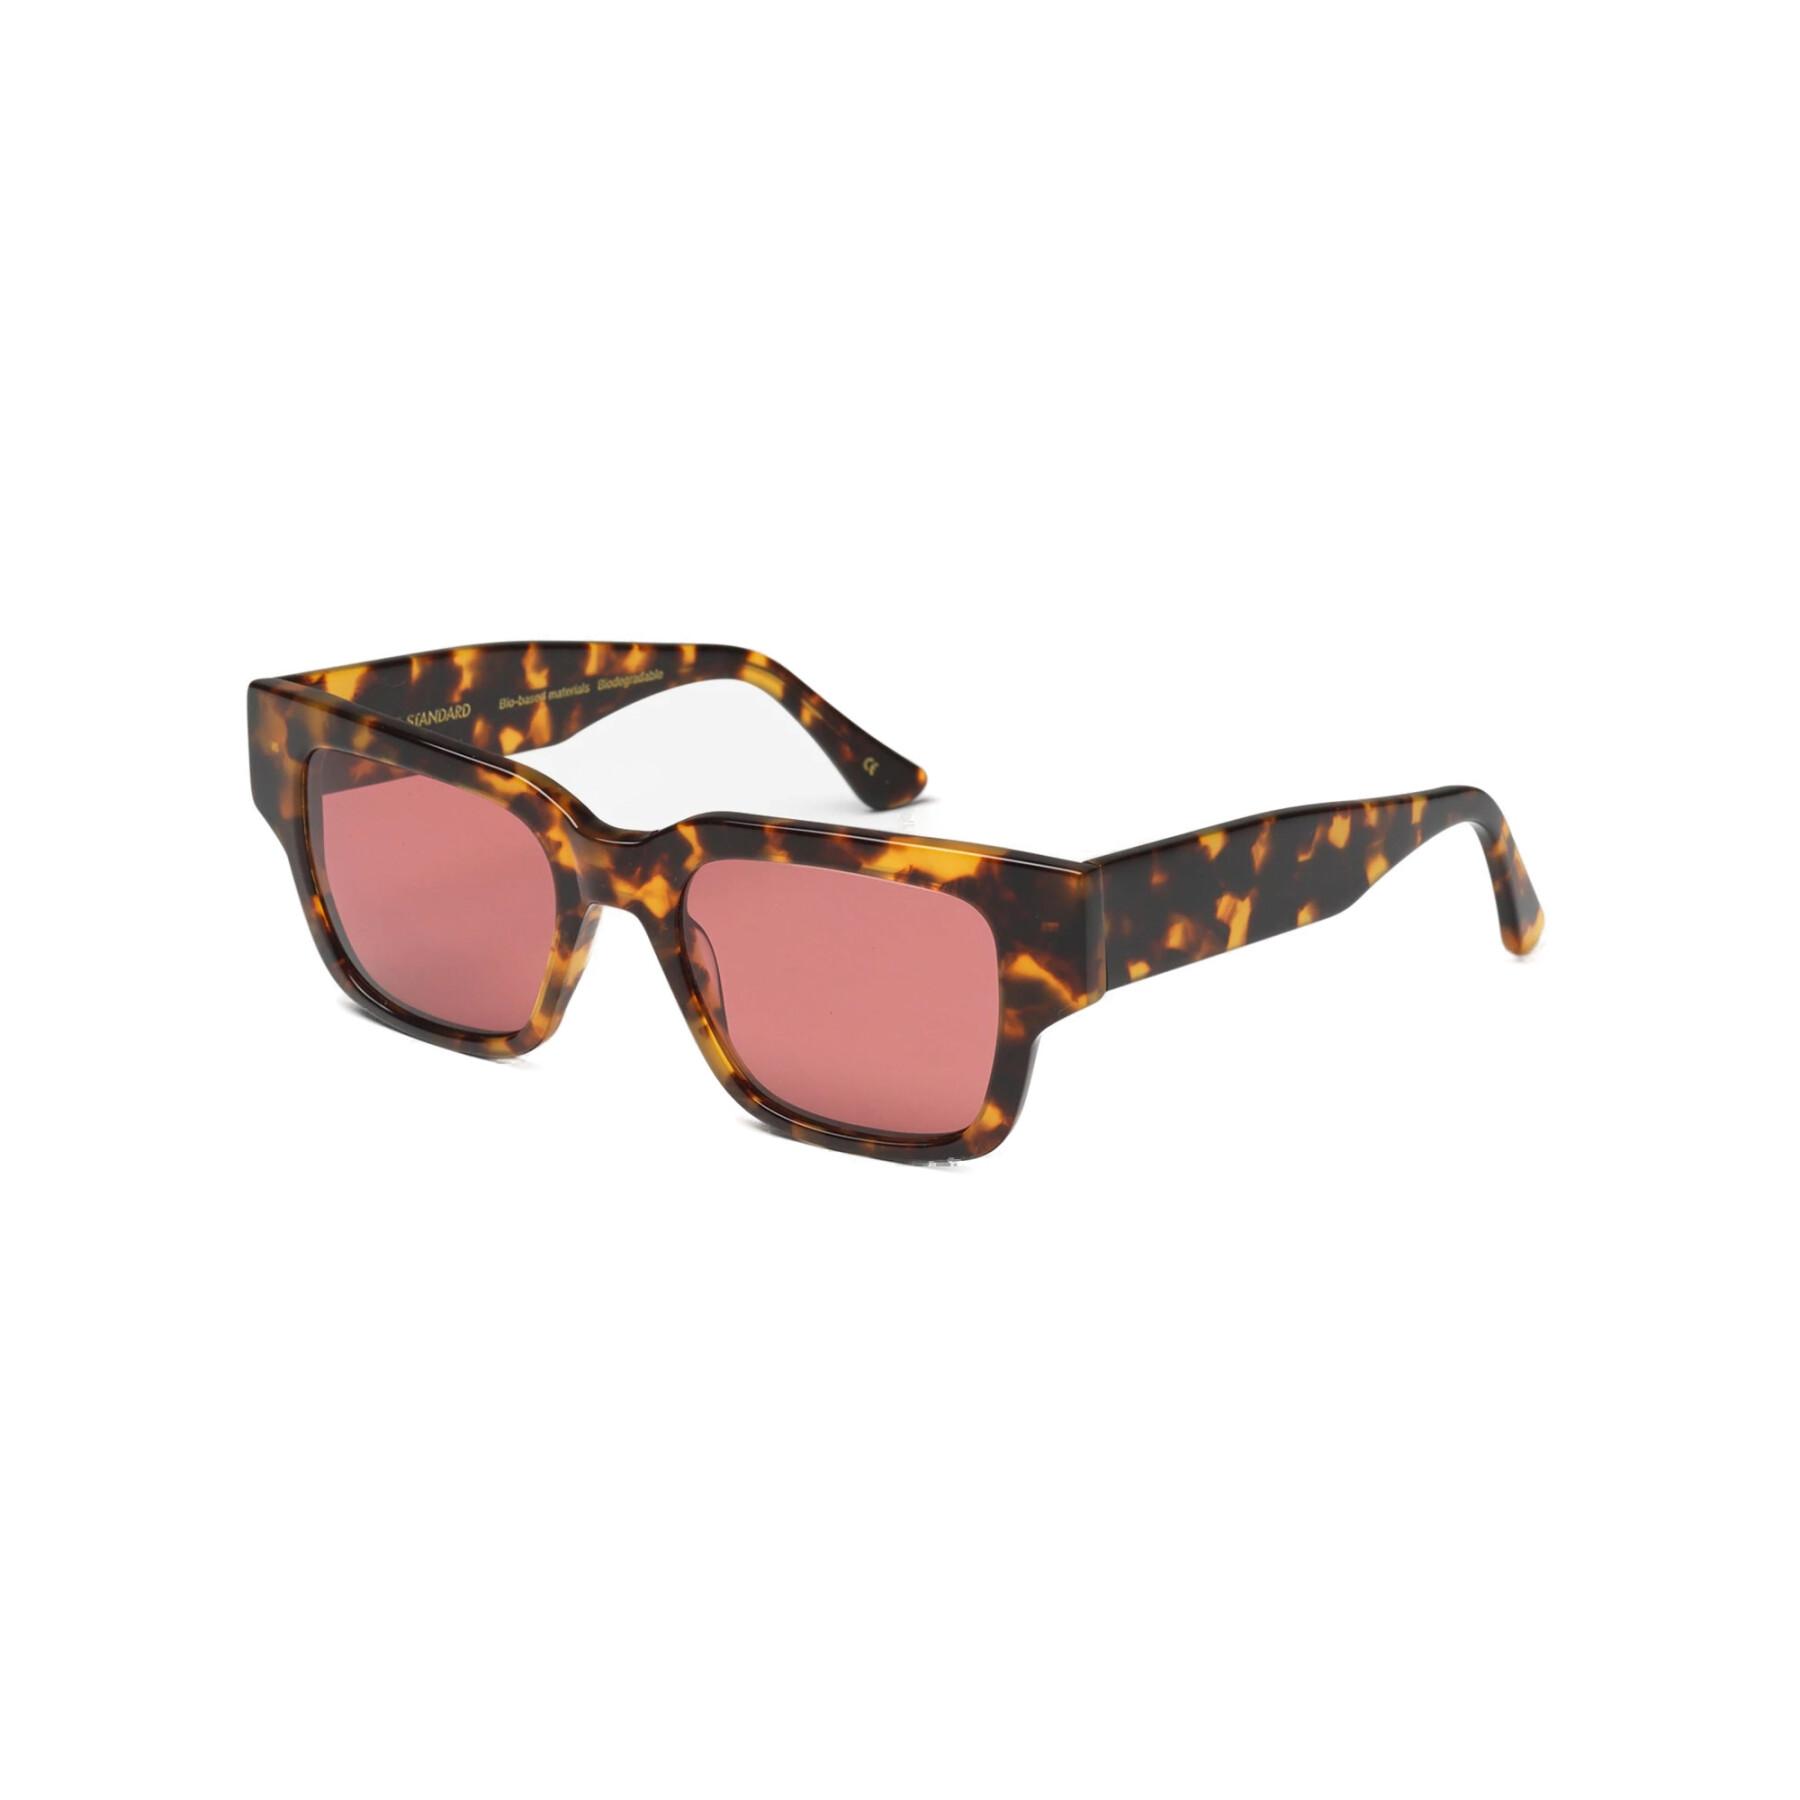 Óculos escuros Colorful Standard 02 classic havana/dark pink